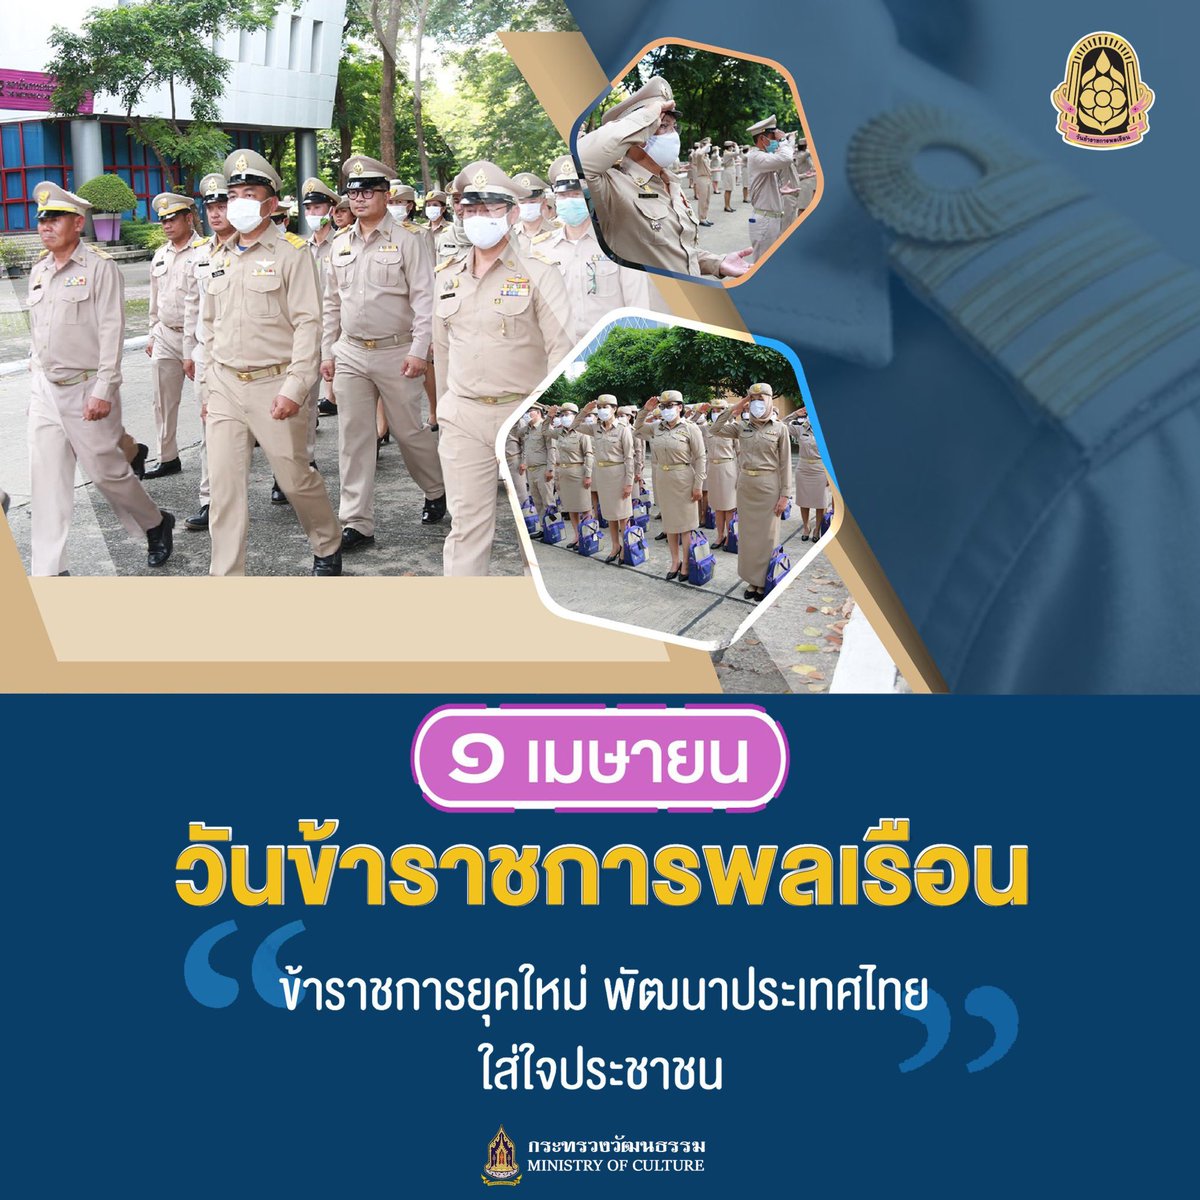 ๑ เมษายน วันข้าราชการพลเรือน “ข้าราชการยุคใหม่ พัฒนาประเทศไทย ใส่ใจประชาชน”